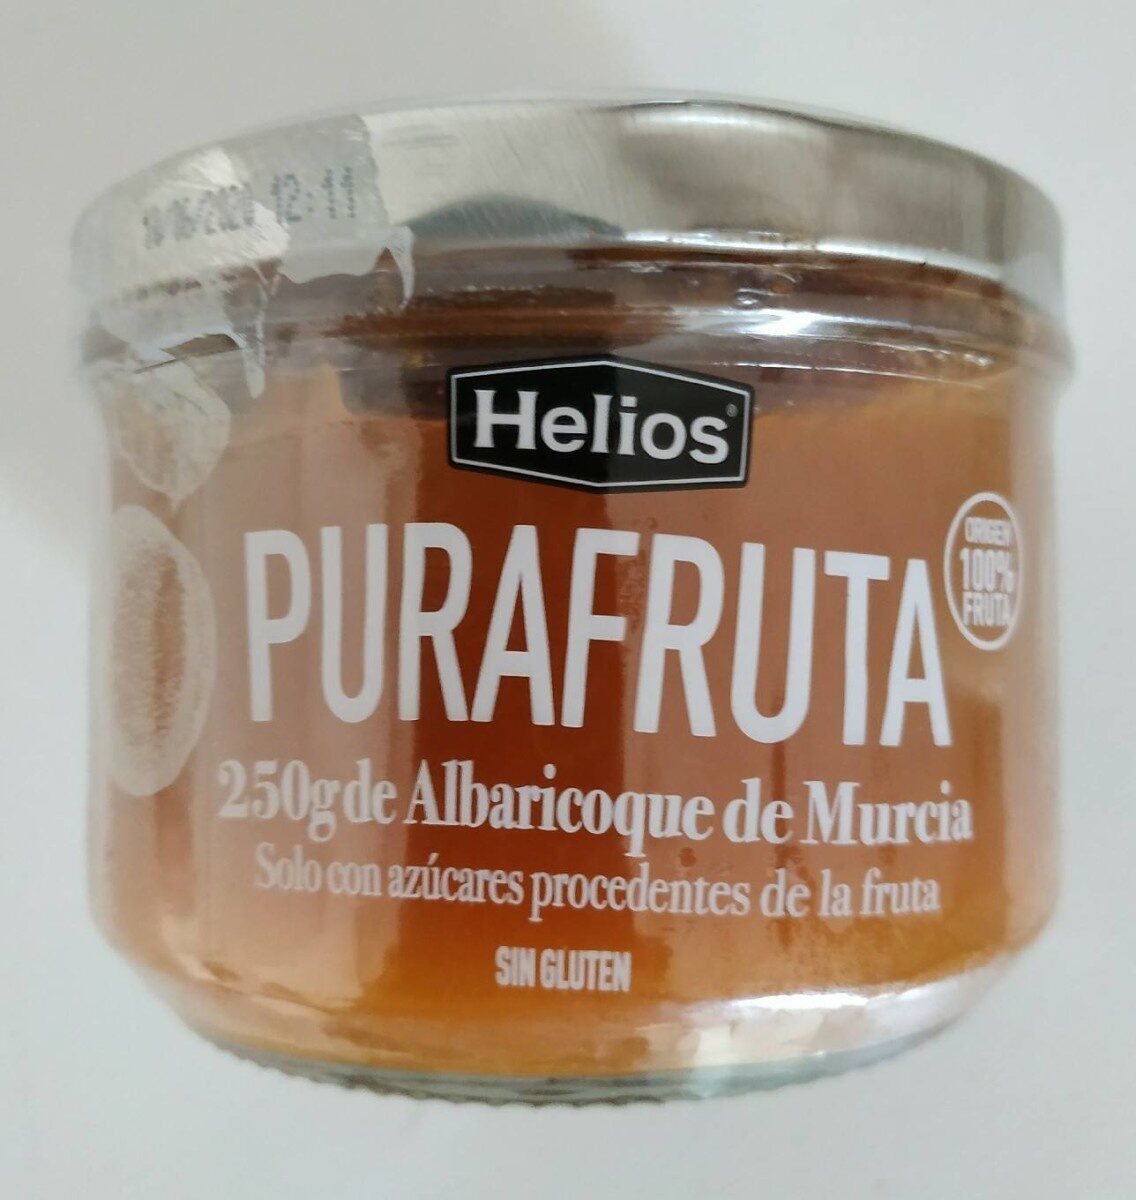 Purafruta mermelada de albaricoque de Murcia - Produktua - es